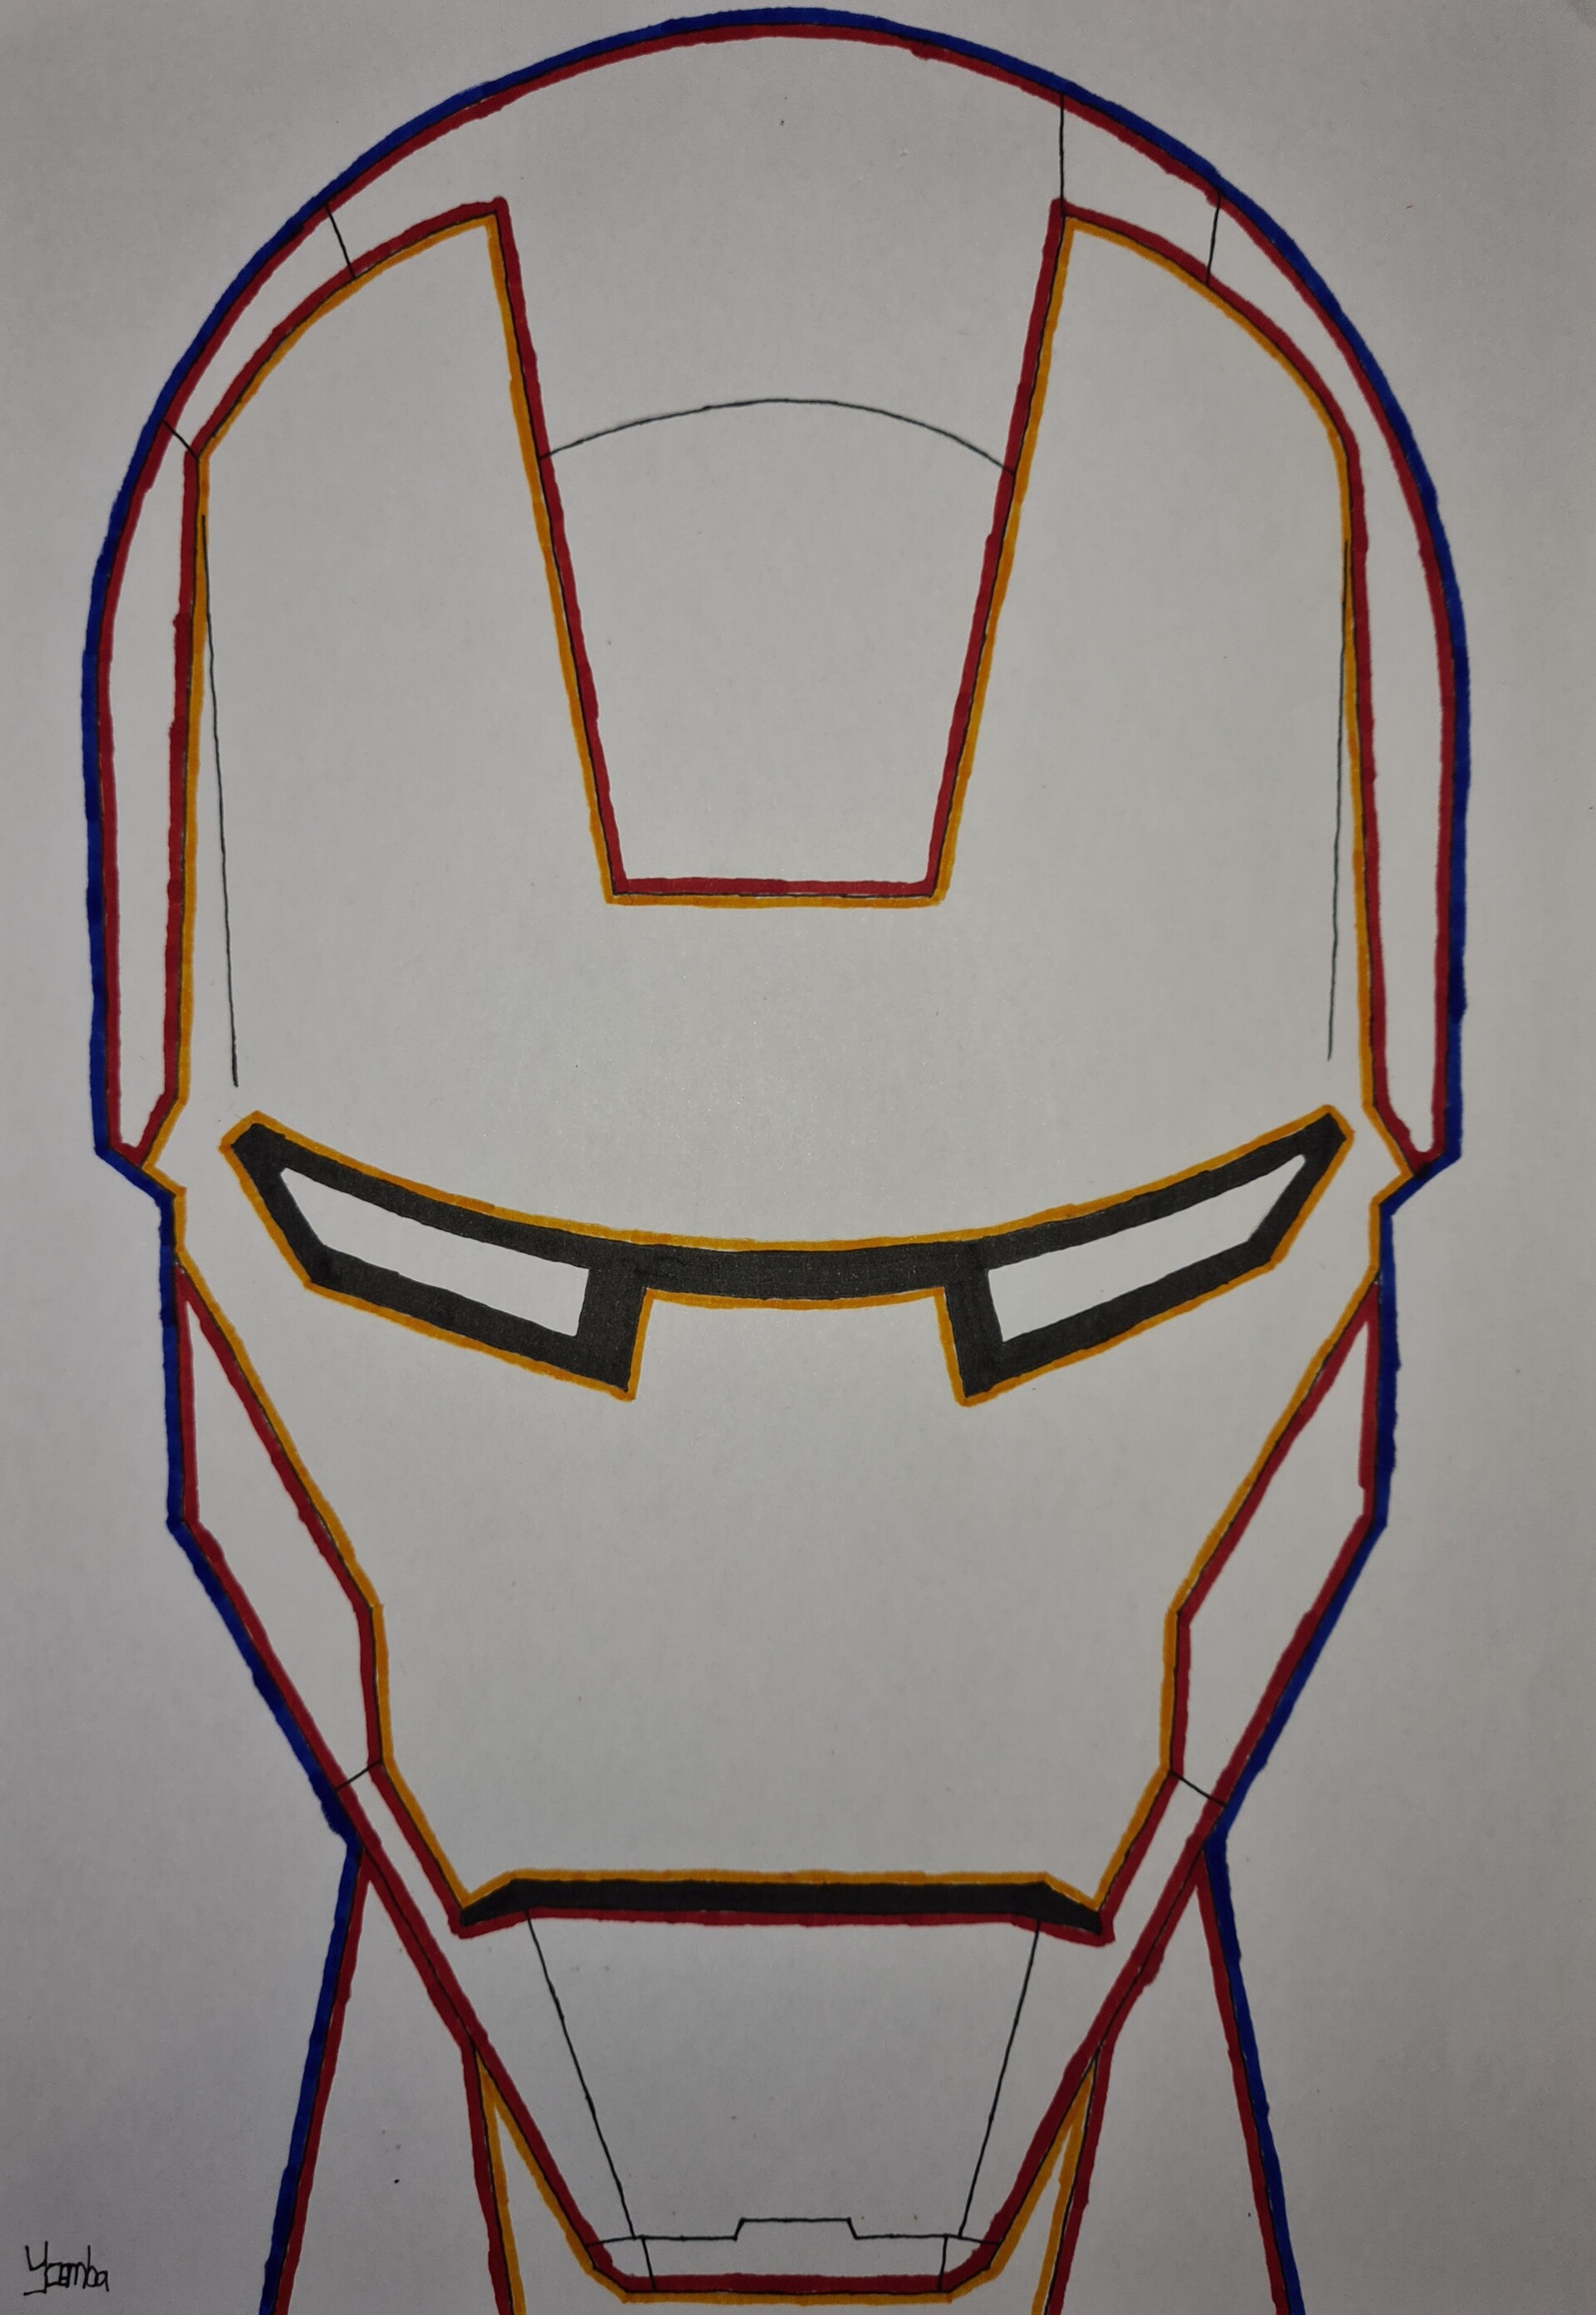 Bạn đã bao giờ tưởng tượng mình có thể vẽ hình Iron Man chưa? Hãy thử thách khả năng đồ họa của mình với bức tranh về Iron Man trên ArtStation. Hình ảnh này sẽ giúp bạn có ý tưởng và cảm hứng để tạo ra một tác phẩm nghệ thuật độc đáo cho riêng mình.